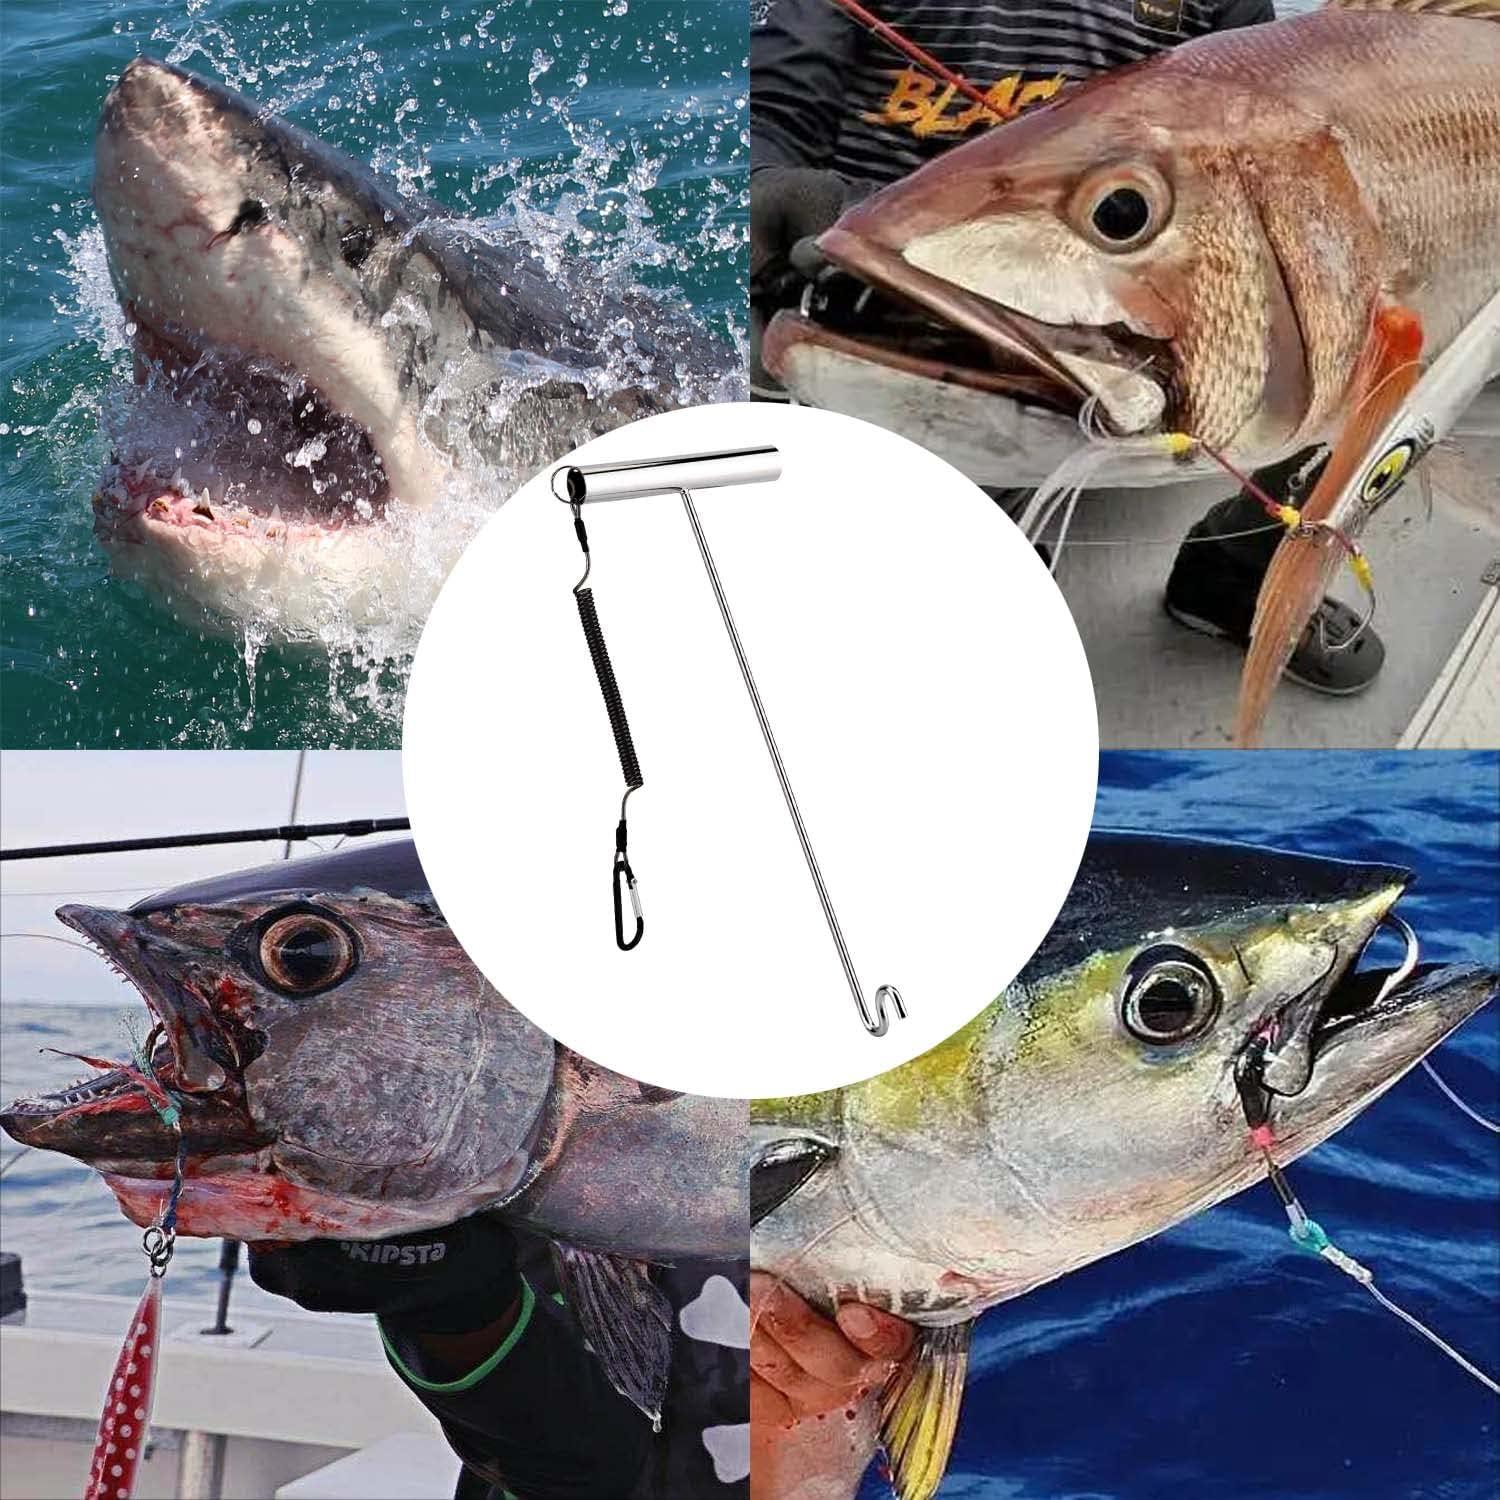 PHLKJL Stainless Steel Fishing Hook Remover,Dehooker Tool,Push